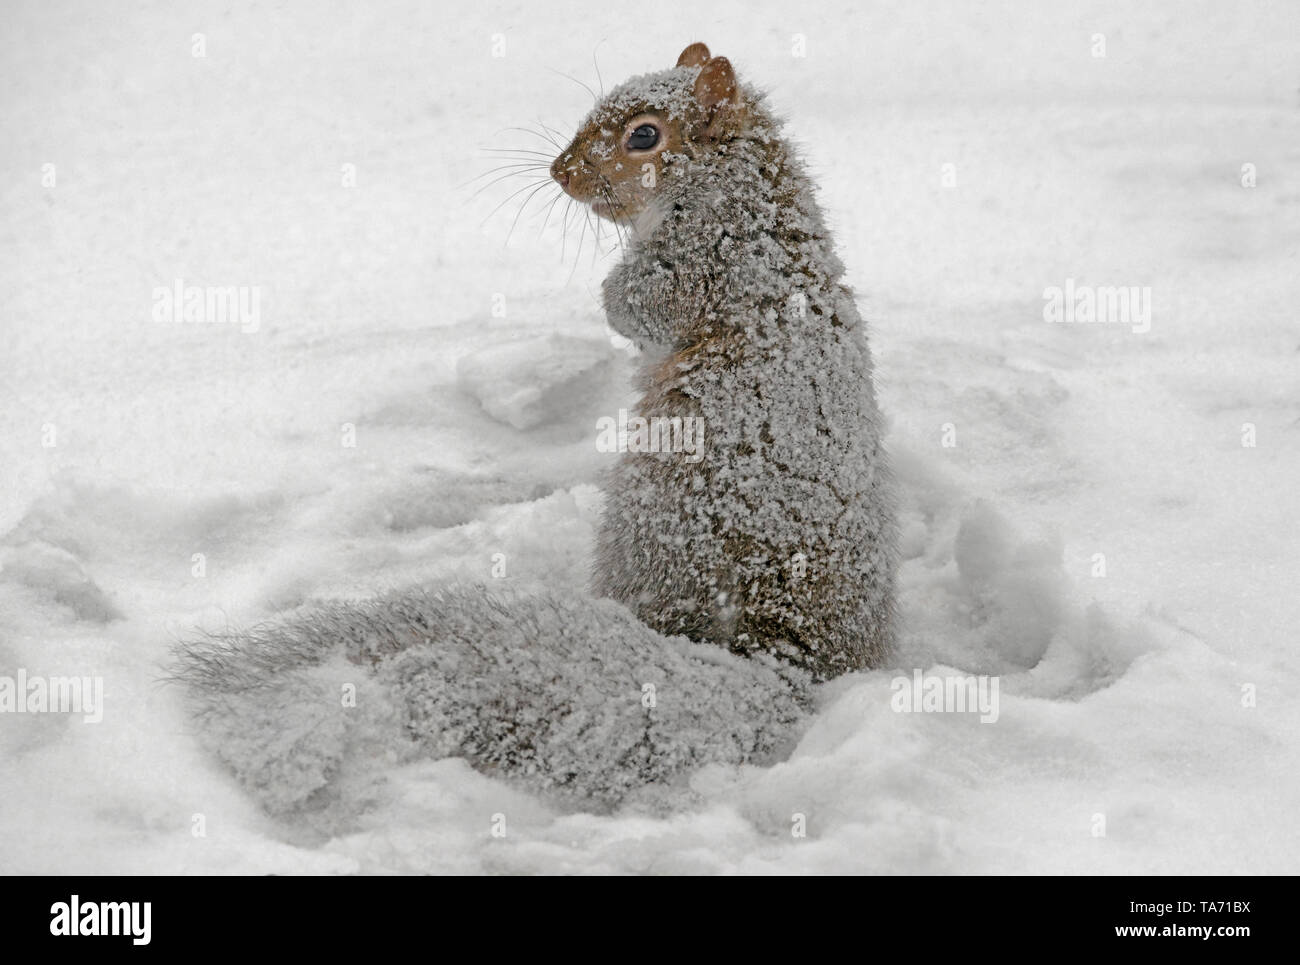 L'Écureuil gris (Sciurus carolinensis) arracher et manger des noix, stockées, d'hiver E Amérique du Nord, par aller Moody/Dembinsky Assoc Photo Banque D'Images